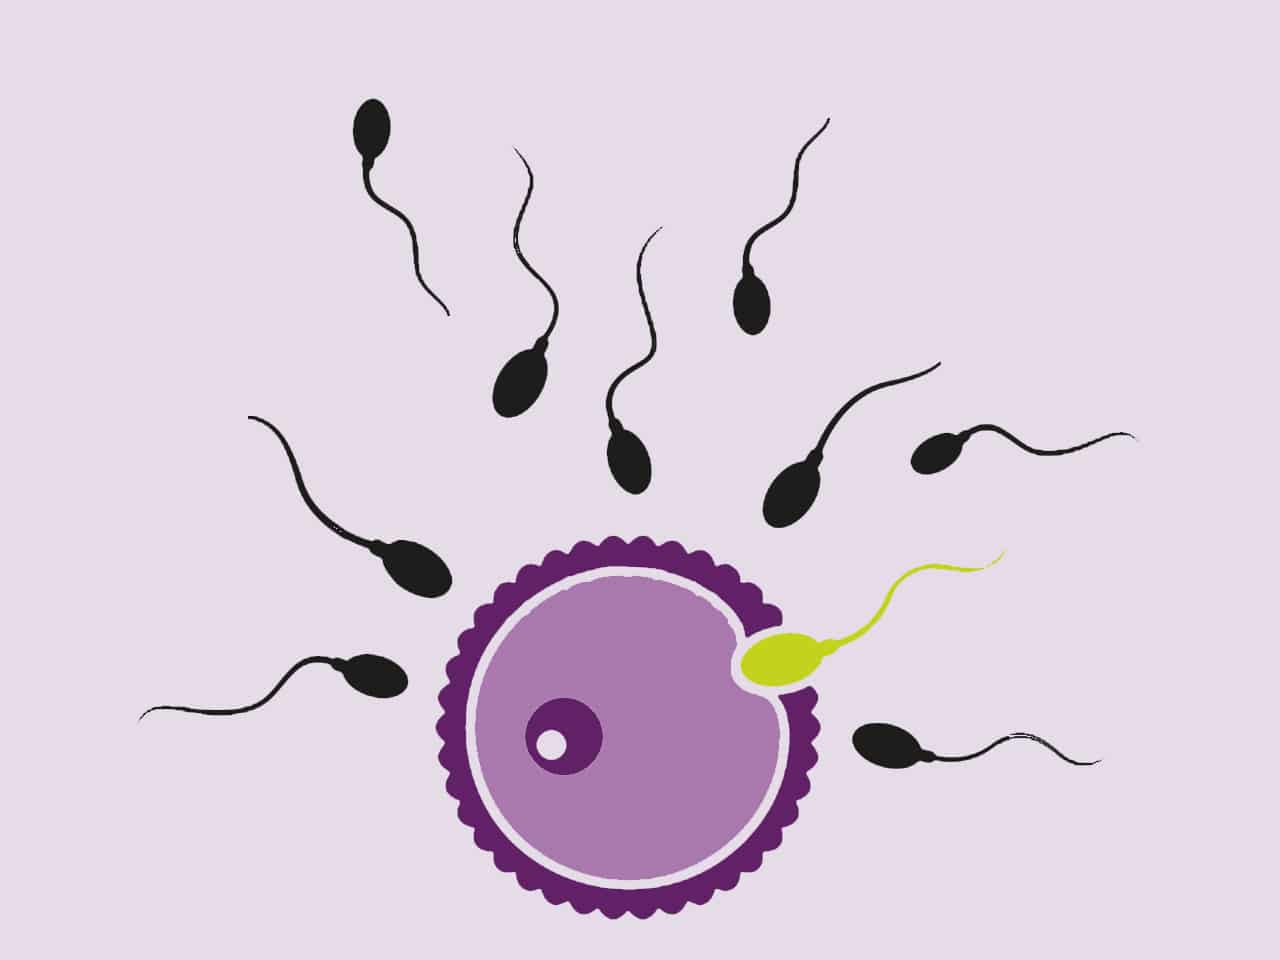 Wenn die Eizelle nach ihrer Befruchtung in der Gebärmutterschleimhaut andockt, kann es zur Einnistung kommen.